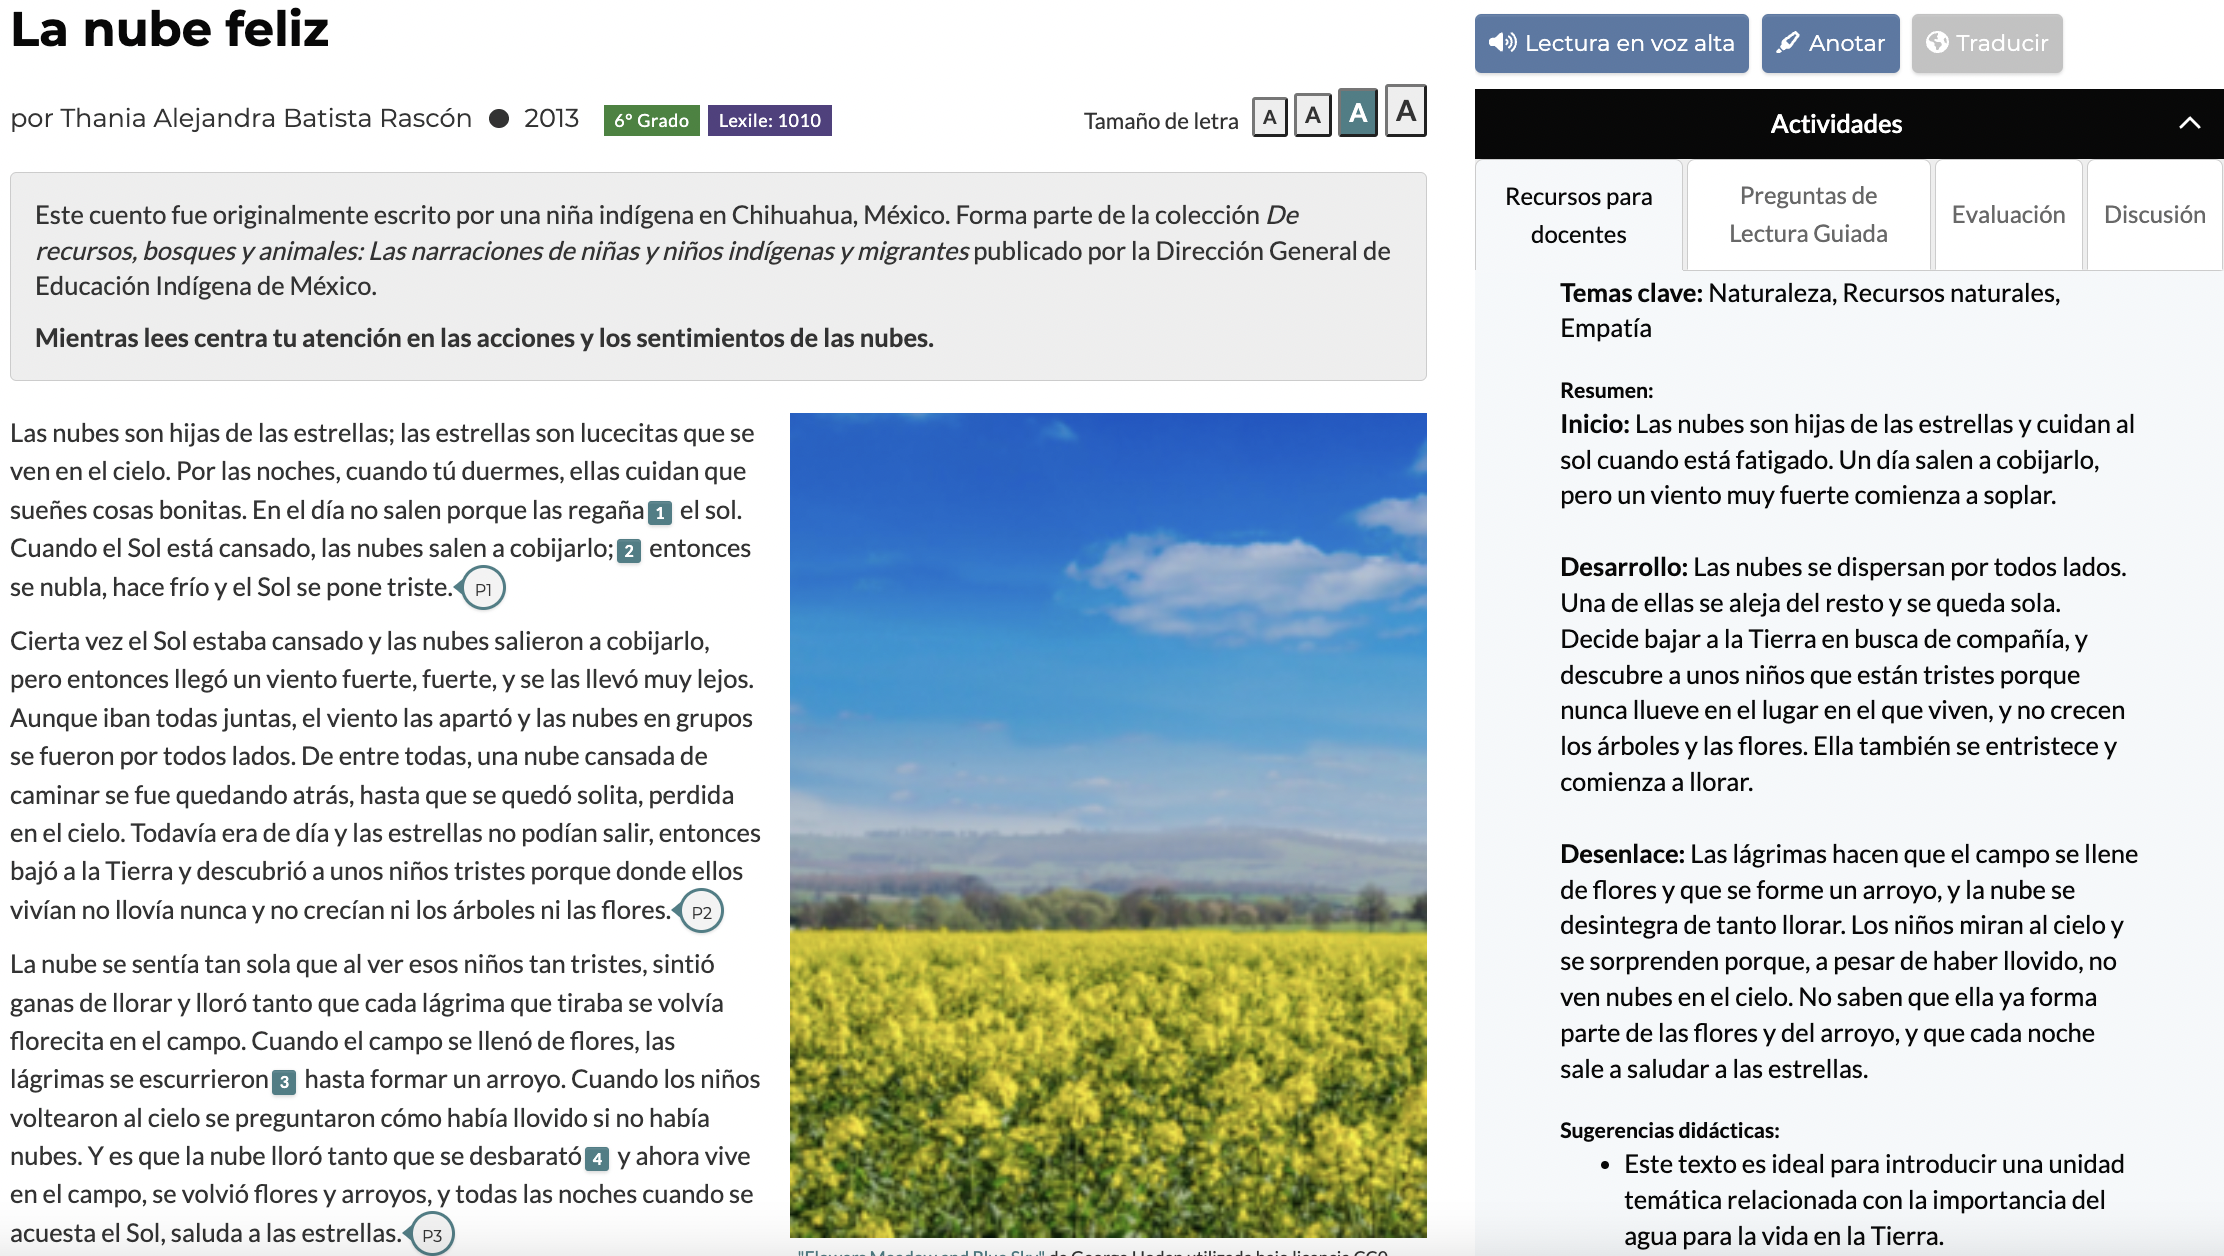 Vista de la página del texto en la plataforma CommonLit, mostrando los Recursos para docentes